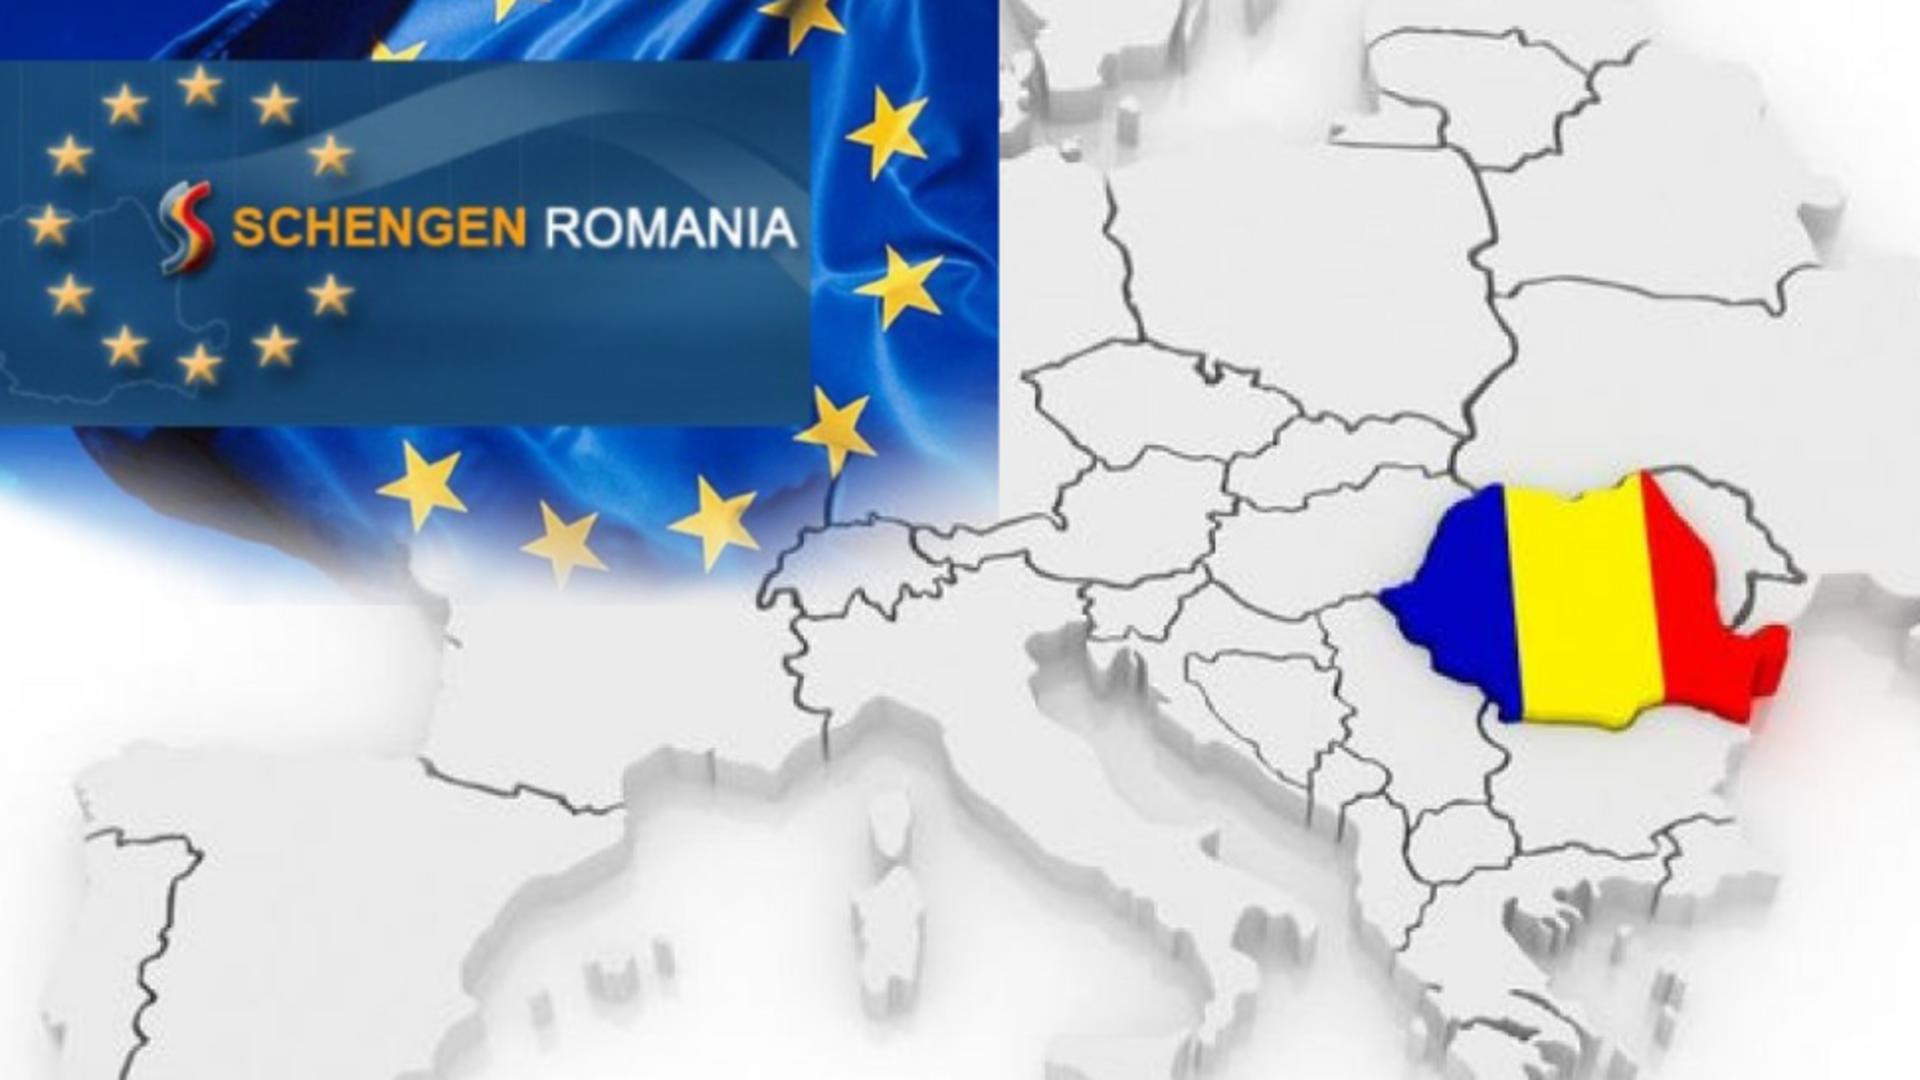 Negocieri pentru intrarea României în Schengen, pe ultima sută de metri, după opoziția Austriei - Cele 4 scenarii pentru 8 decembrie